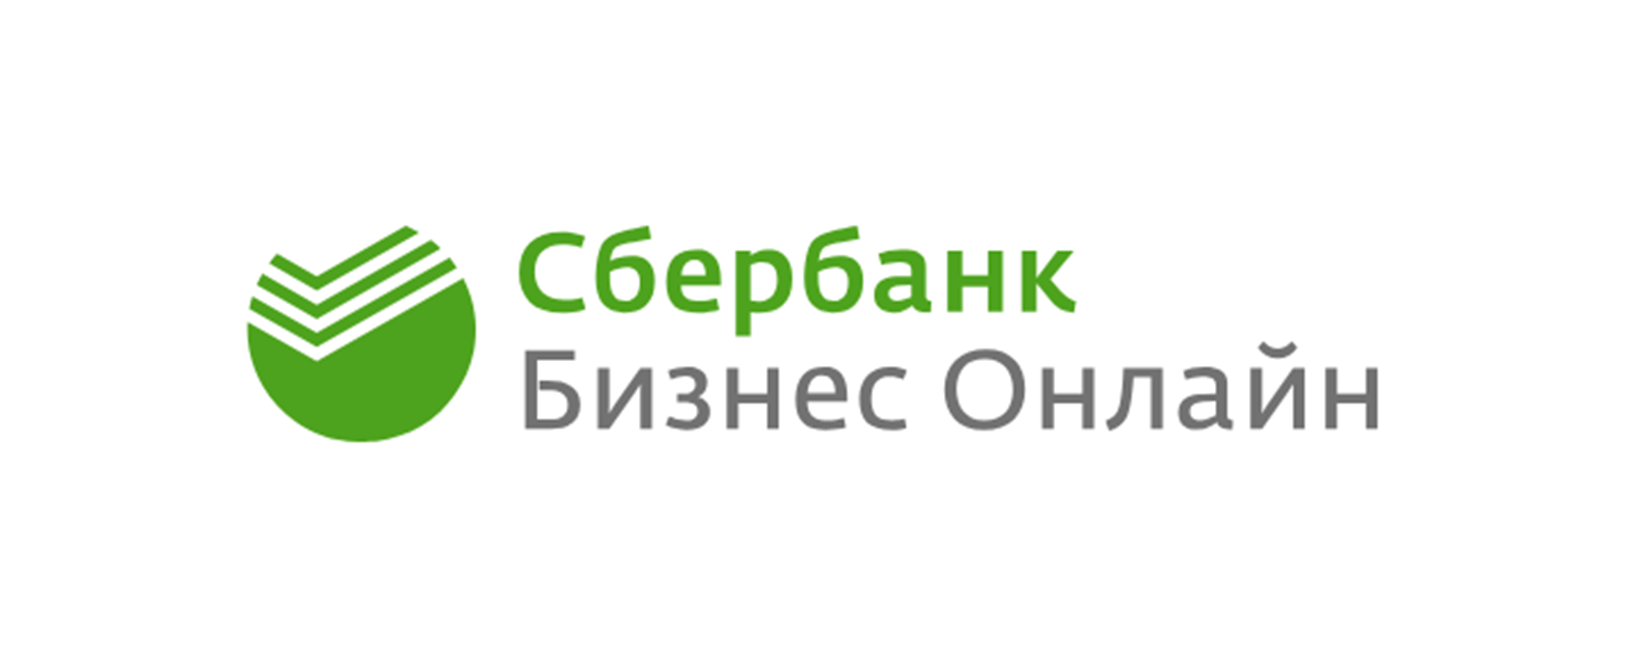 C сбербанк бизнес онлайн вход пенза вакансии валберис арбеково